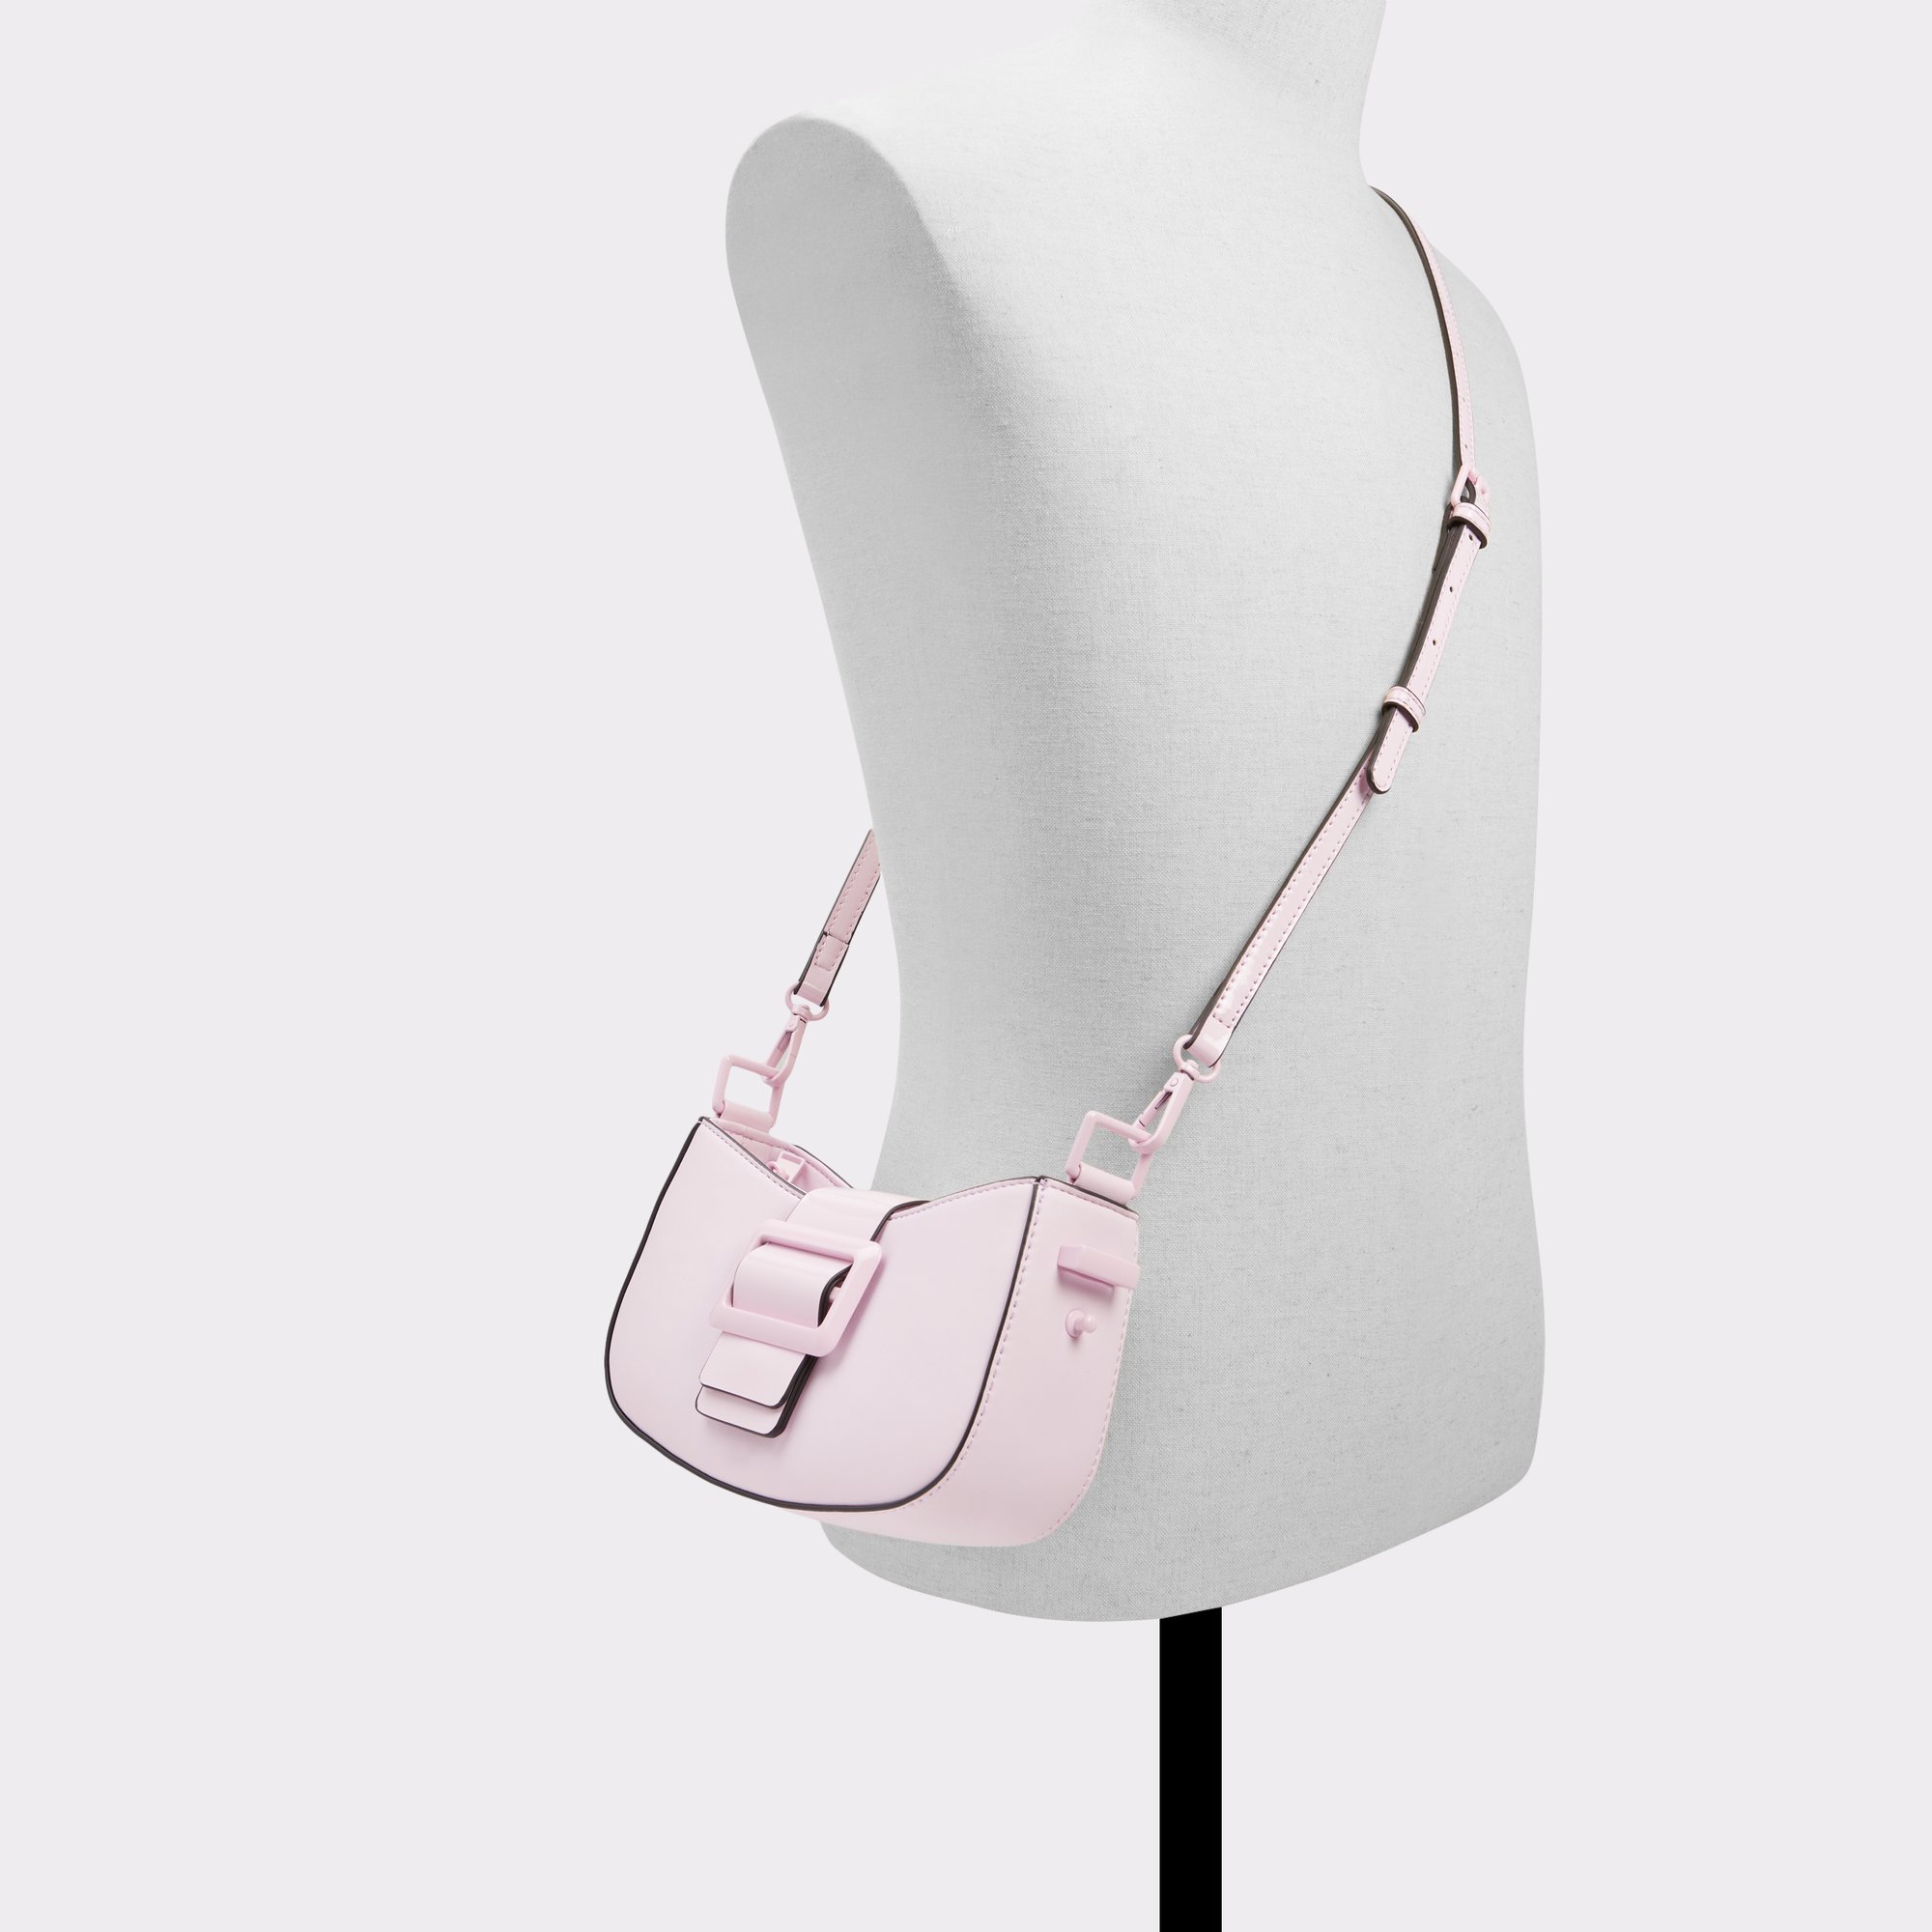 ALDO Shoulder Bag With Fringe Detail And Tassels in Pink